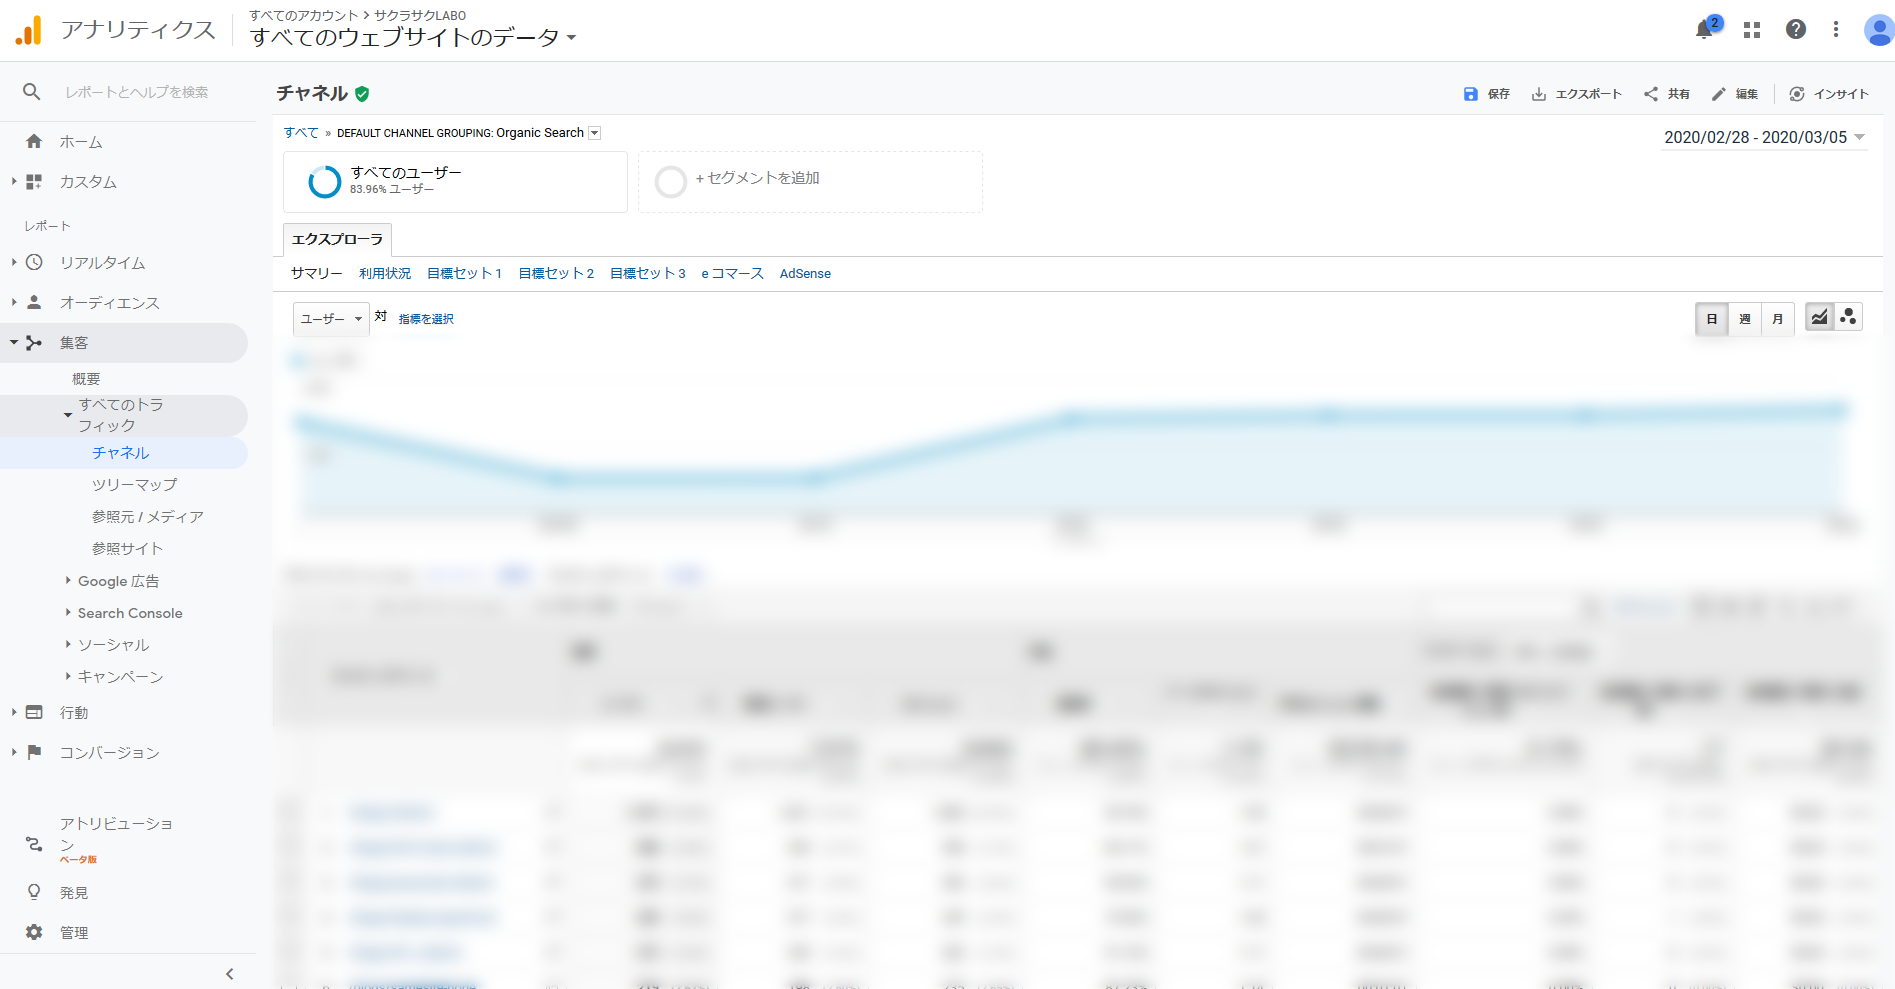 Google Analyticsランディングページ画面